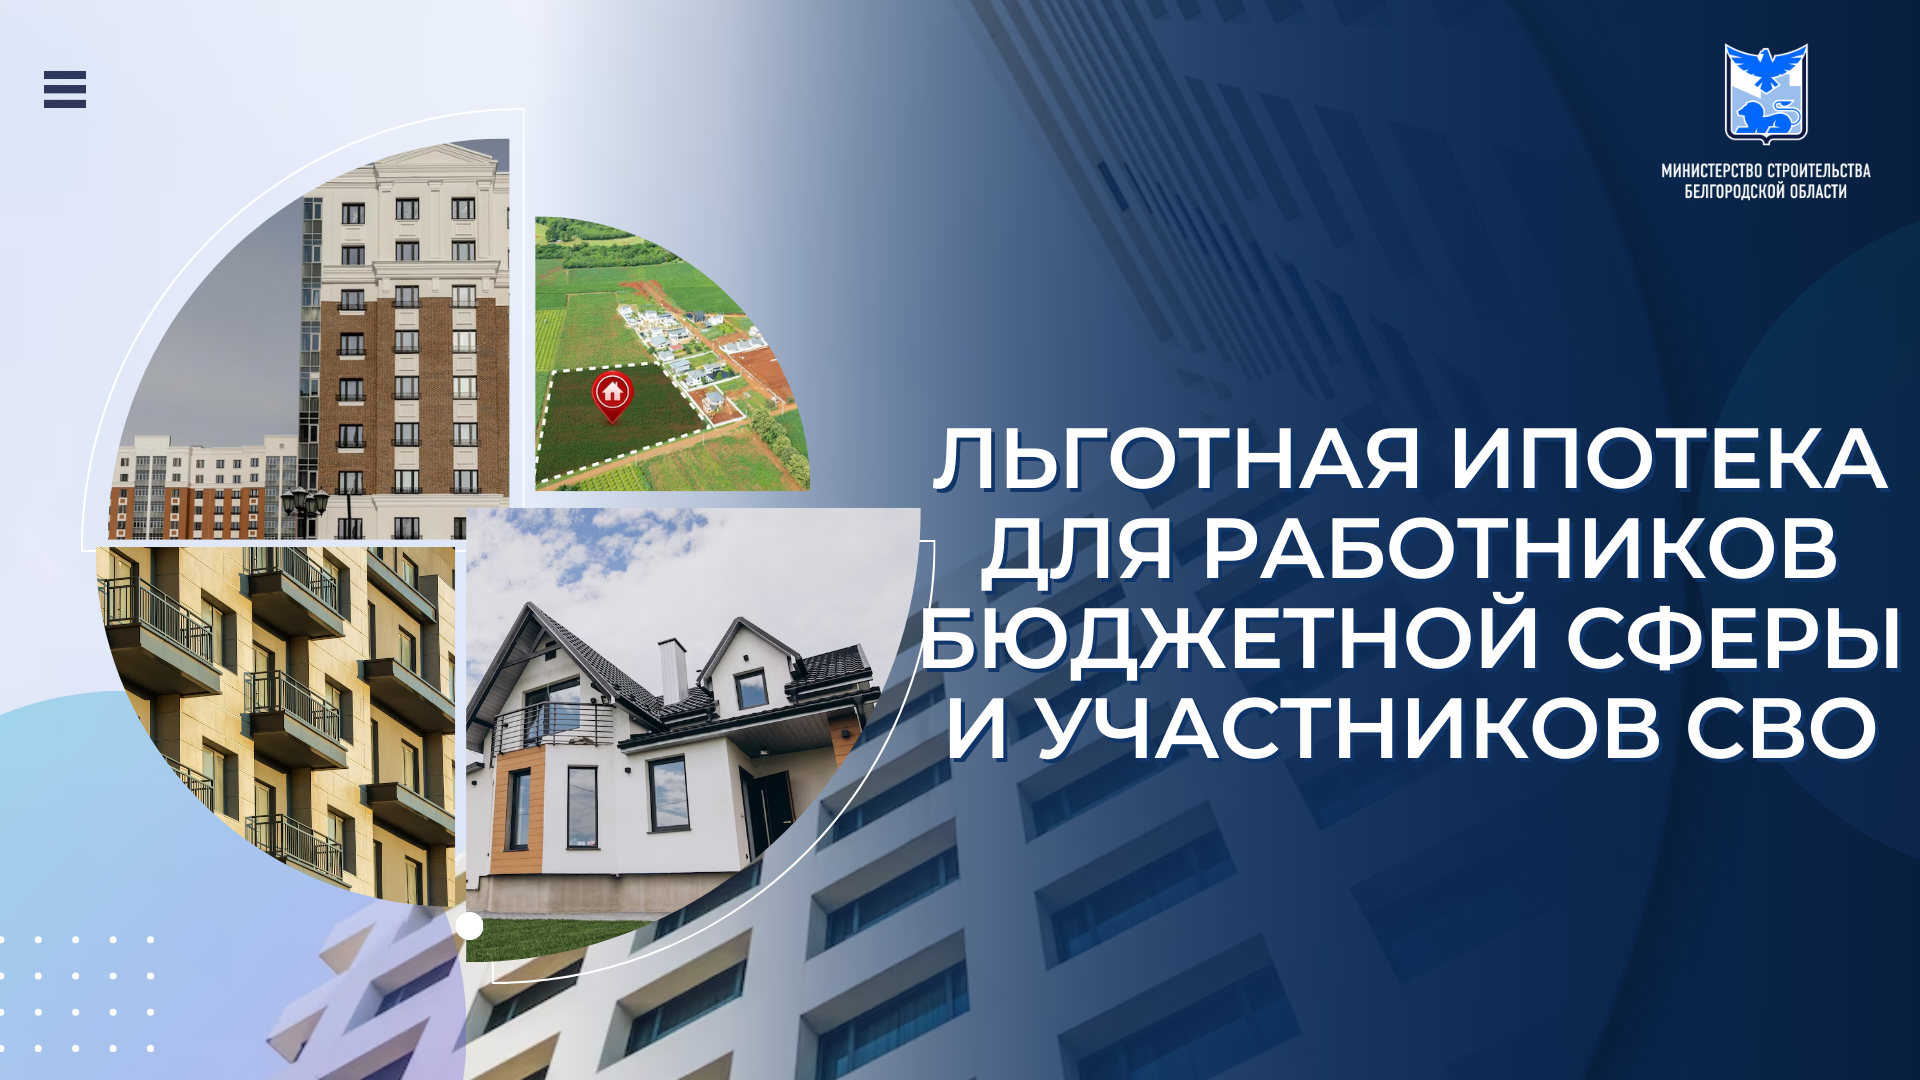 На территории Белгородской области продолжает действовать программа льготного ипотечного кредитования «Губернаторская ипотека»..